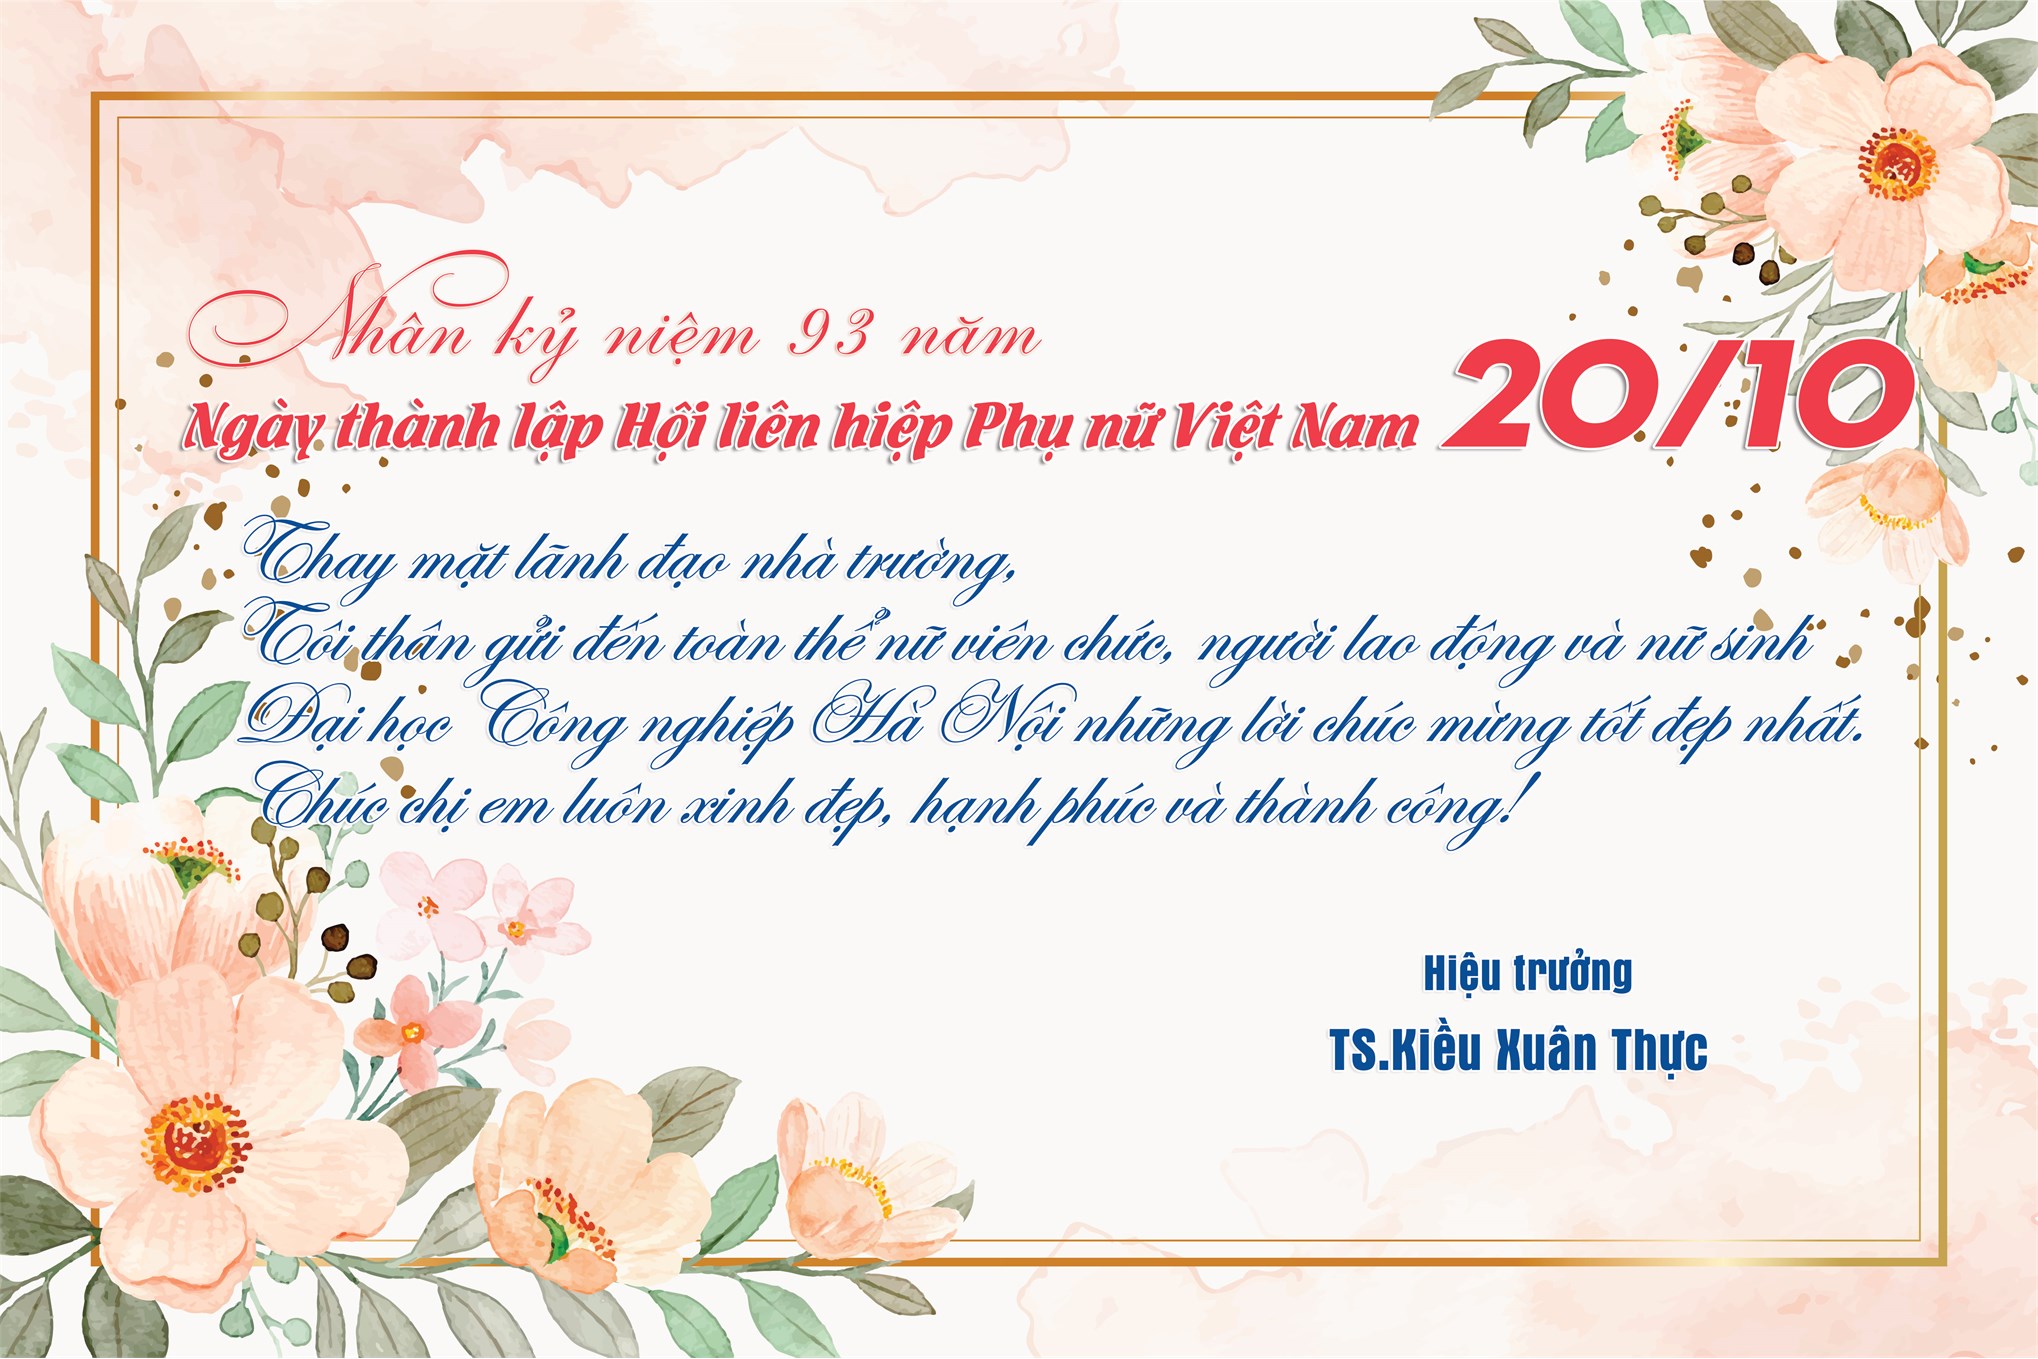 Chúc mừng 93 năm ngày thành lập Hội Liên hiệp Phụ nữ Việt Nam 20/10